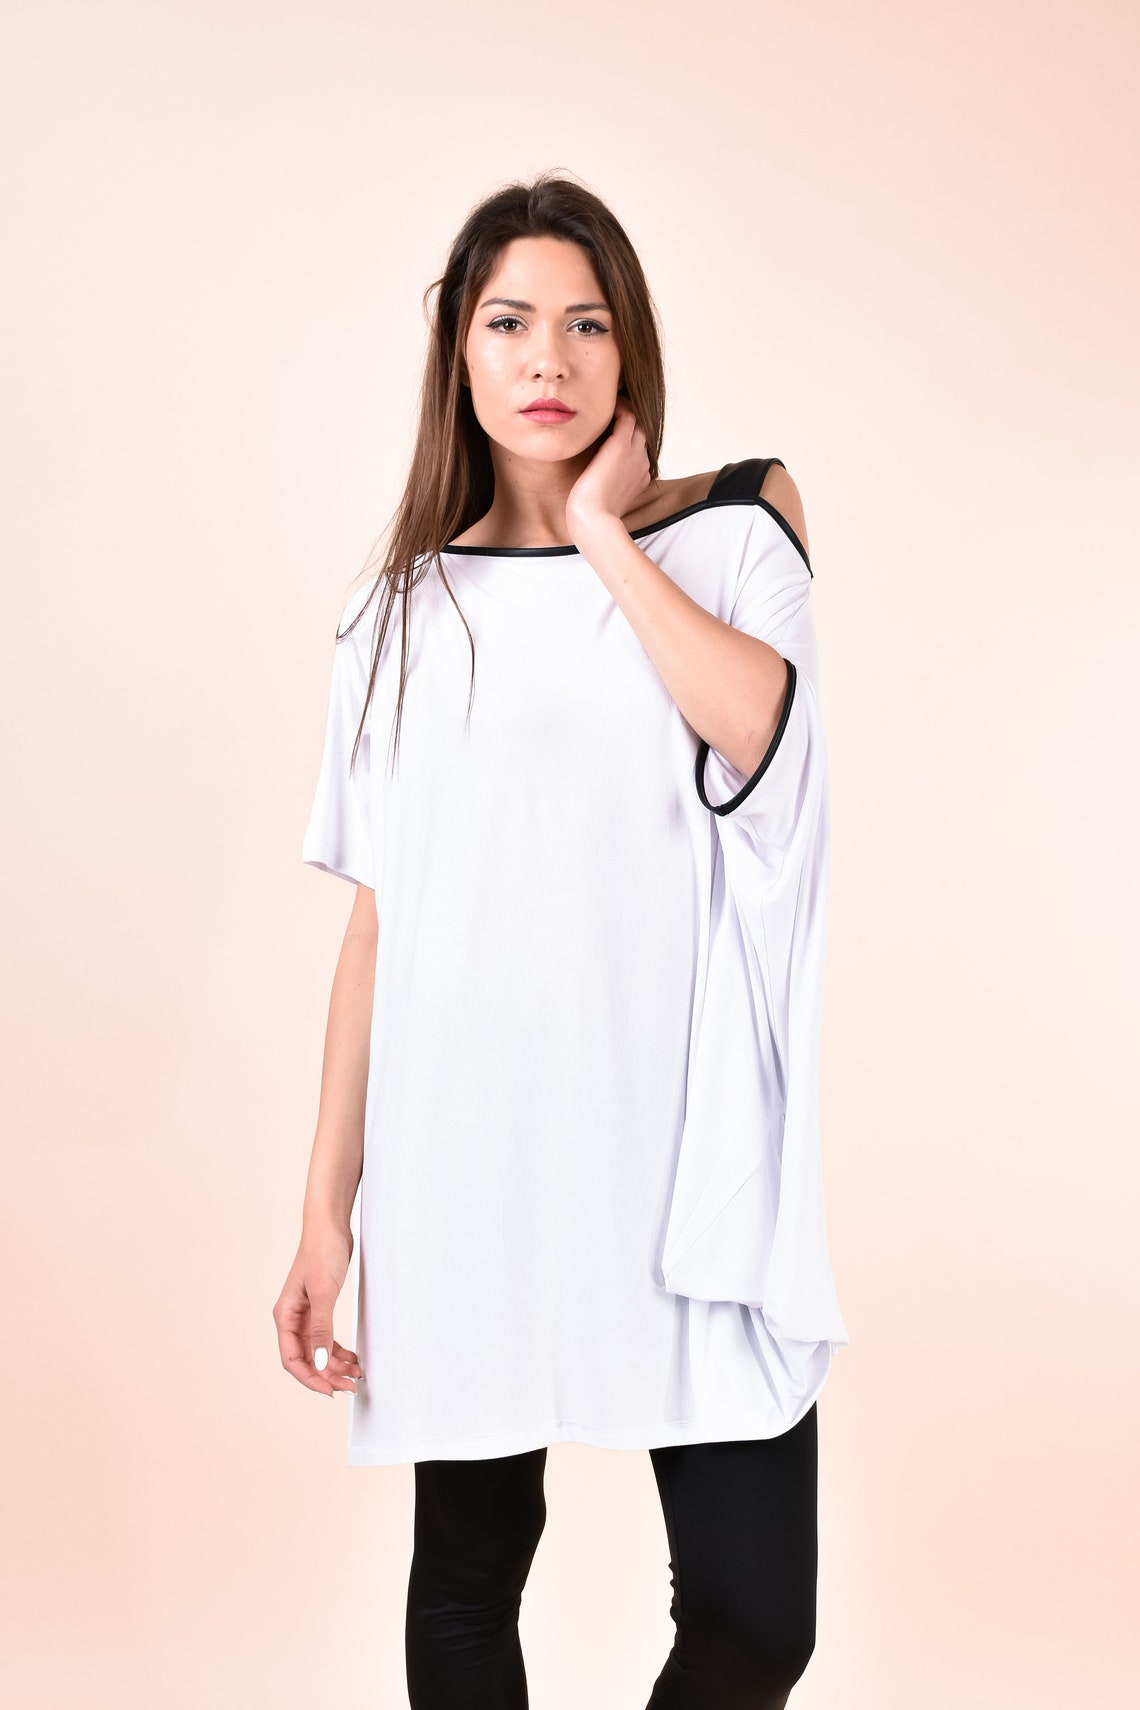 Tunic Women White Tunic Plus Size Clothing One Shoulder | Etsy